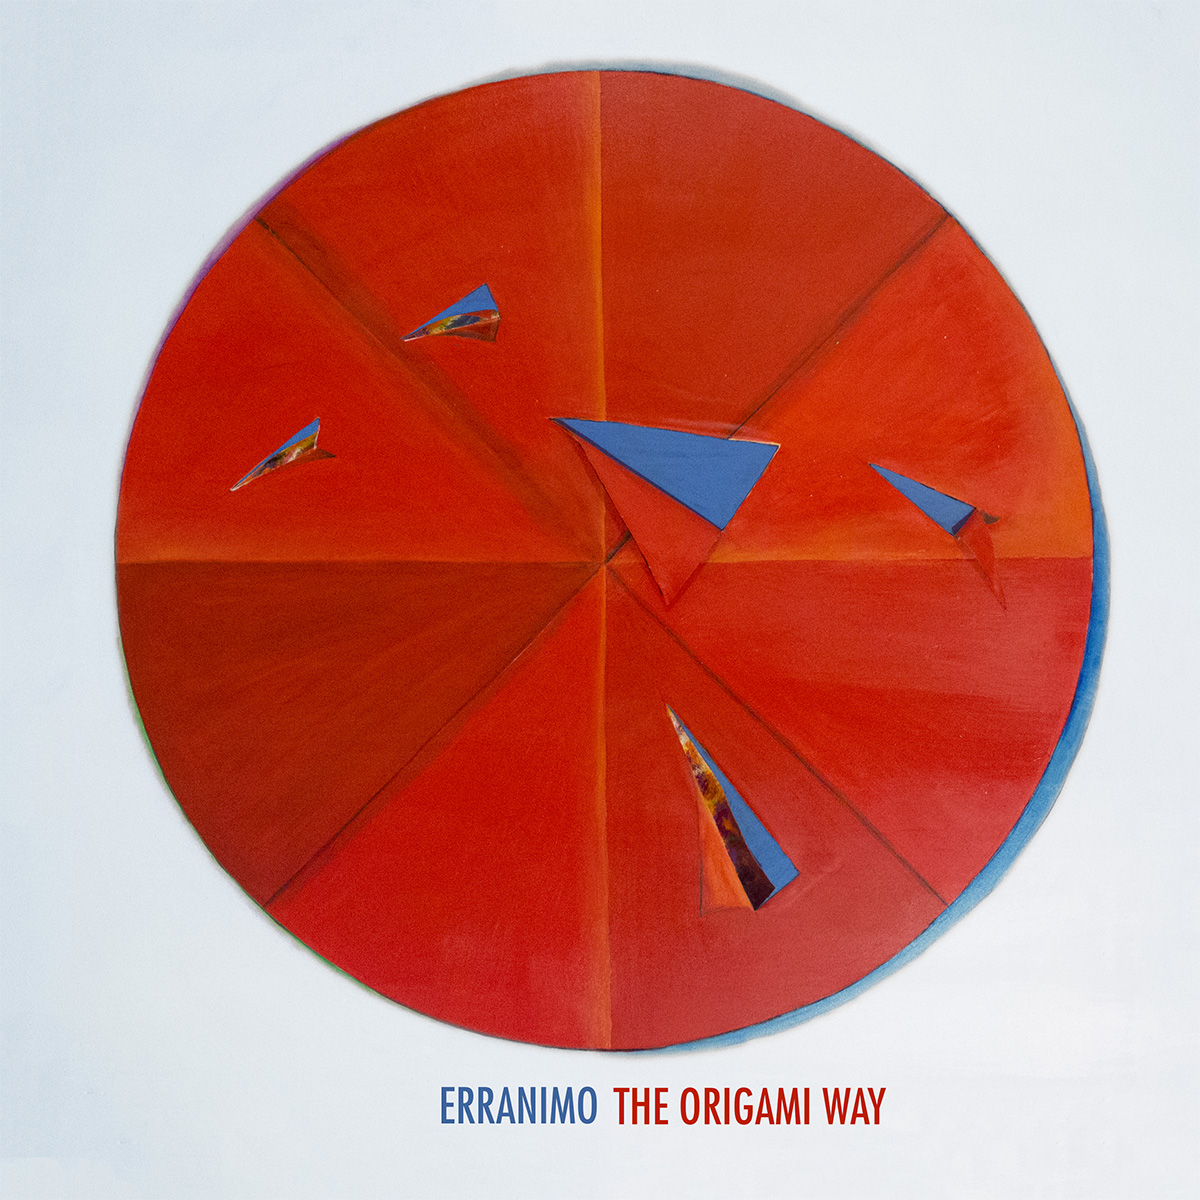 Al momento stai visualizzando “The Origami Way”, il disco di Erranimo